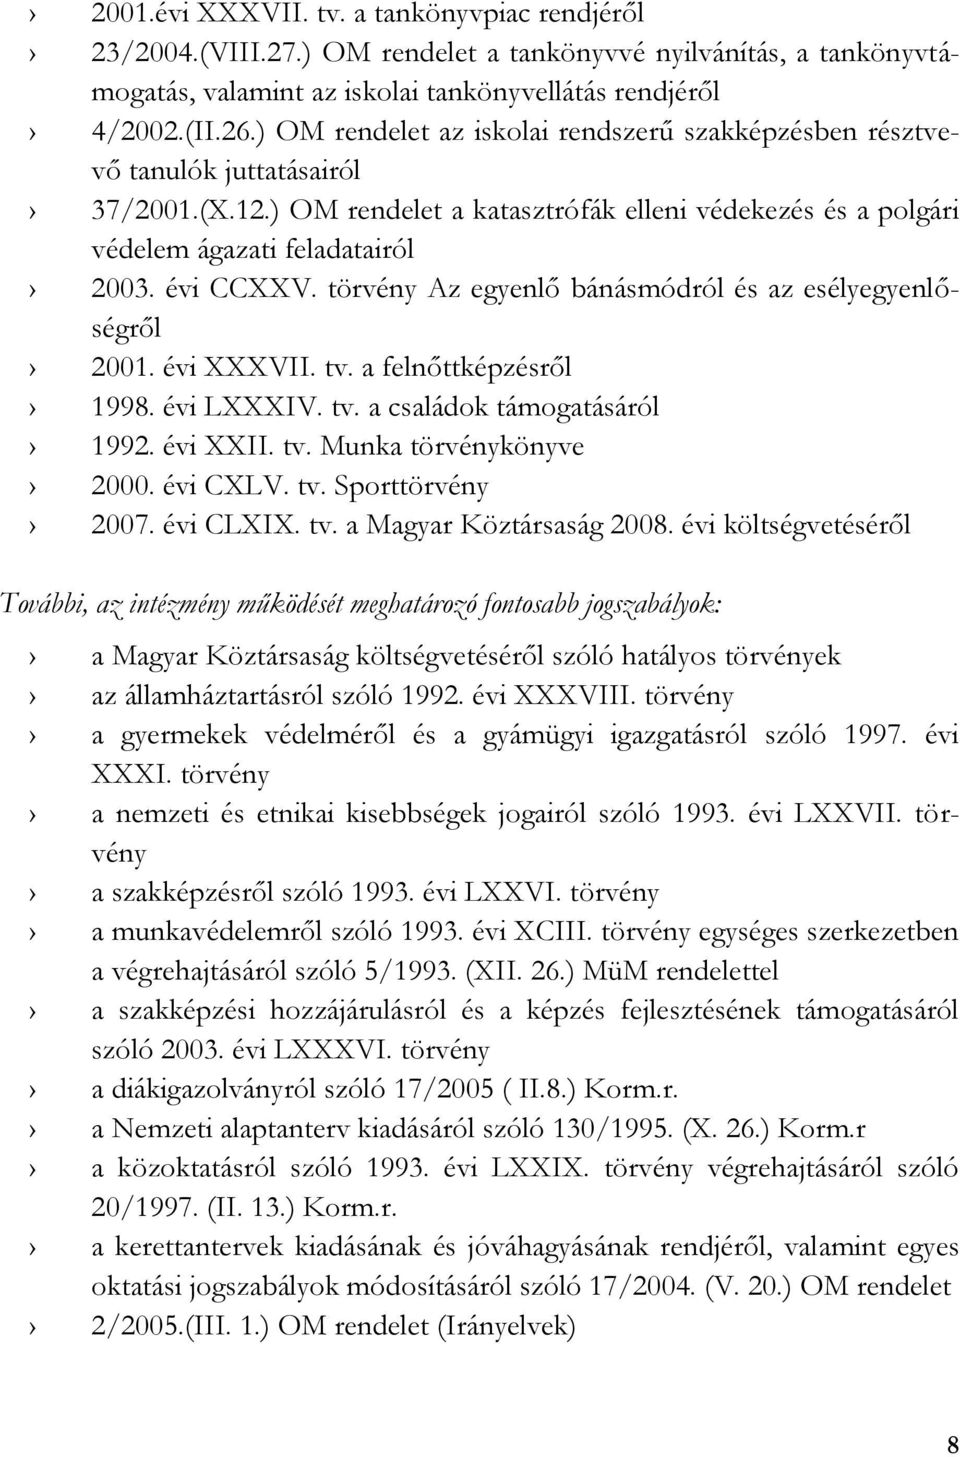 törvény Az egyenlő bánásmódról és az esélyegyenlőségről 2001. évi XXXVII. tv. a felnőttképzésről 1998. évi LXXXIV. tv. a családok támogatásáról 1992. évi XXII. tv. Munka törvénykönyve 2000. évi CXLV.